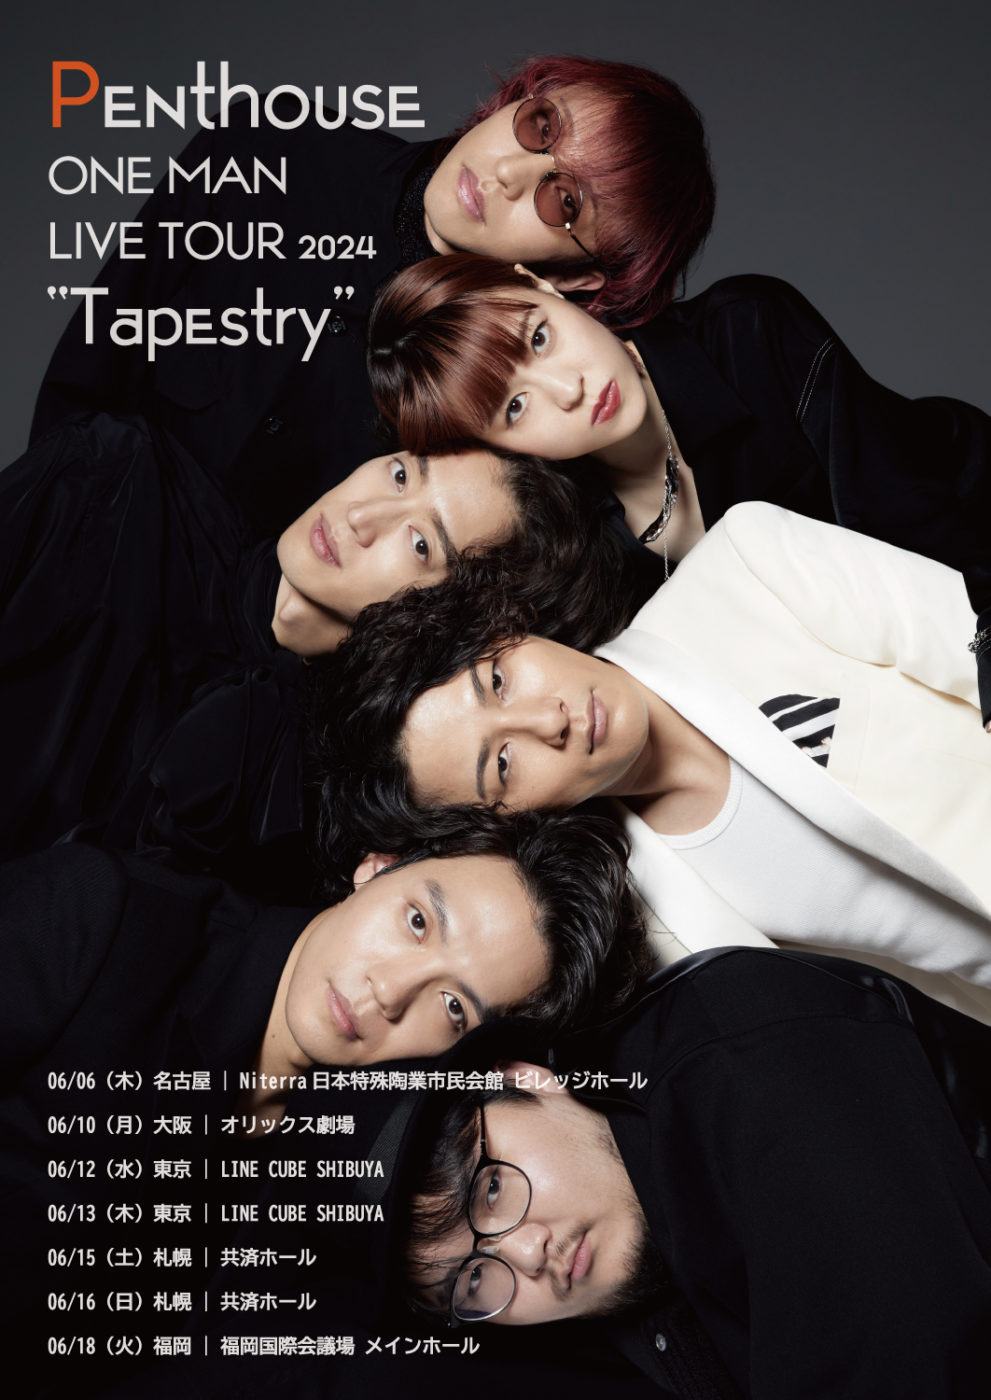 6月12日(水)Penthouse ONE MAN LIVE TOUR 2024 “Tapestry” at 東京 LINE CUBE SHIBUYA day1